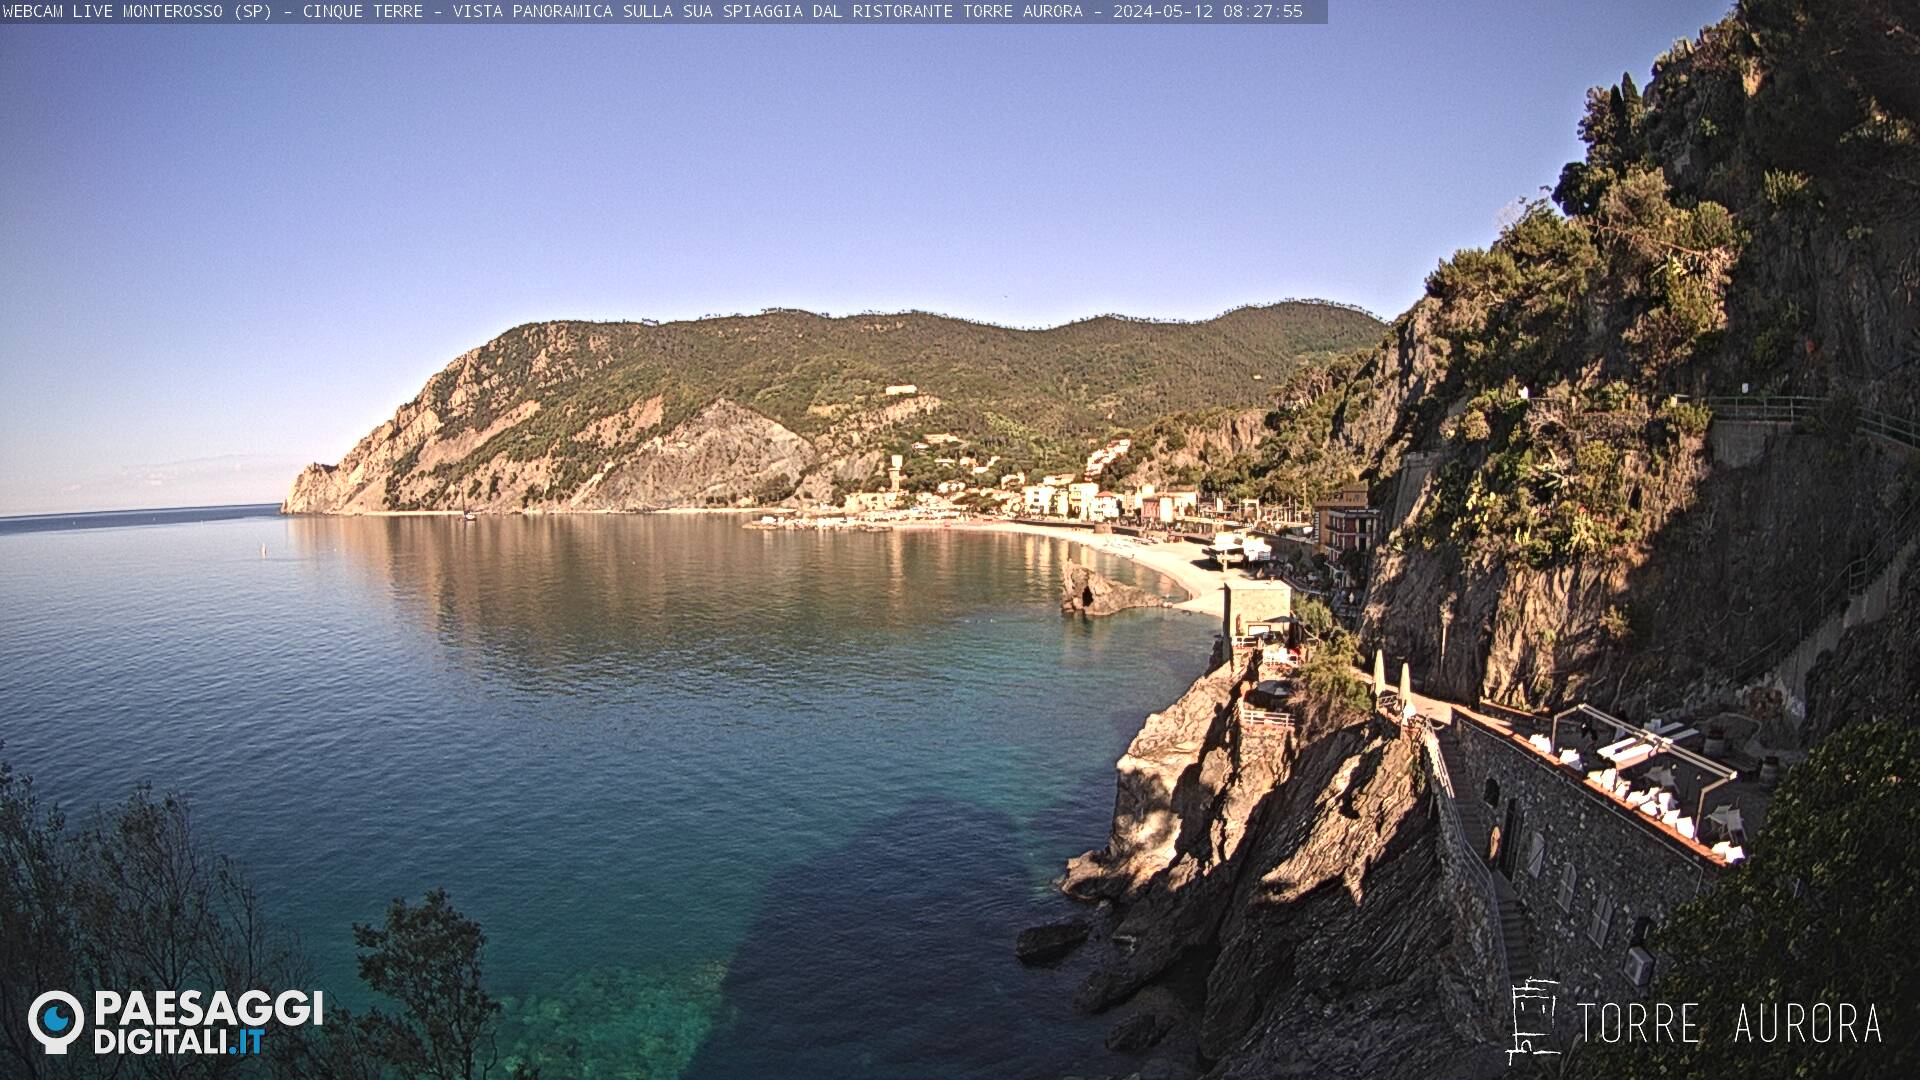 Monterosso al Mare (Cinque Terre) Je. 08:28